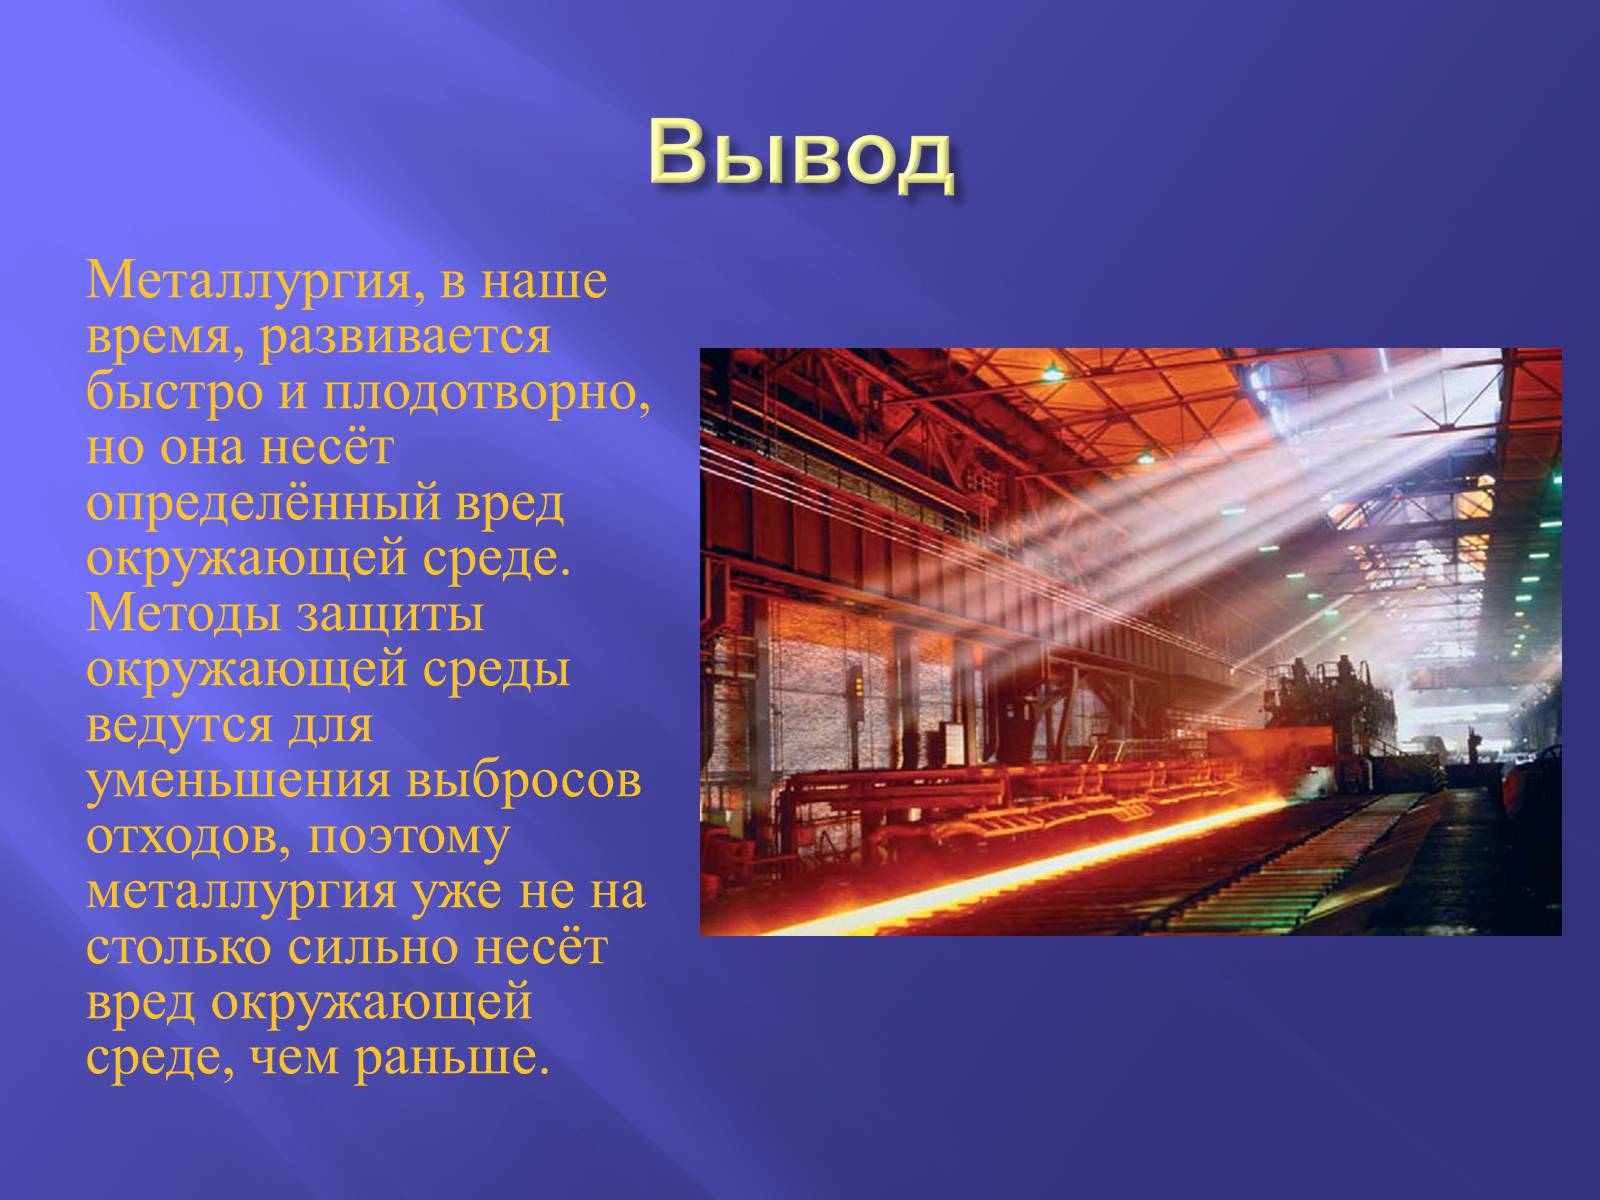 Промышленность россии вывод. Металлургия. Металлургия презентация. Презентация на тему металлургия. Сообщение о металлургии.